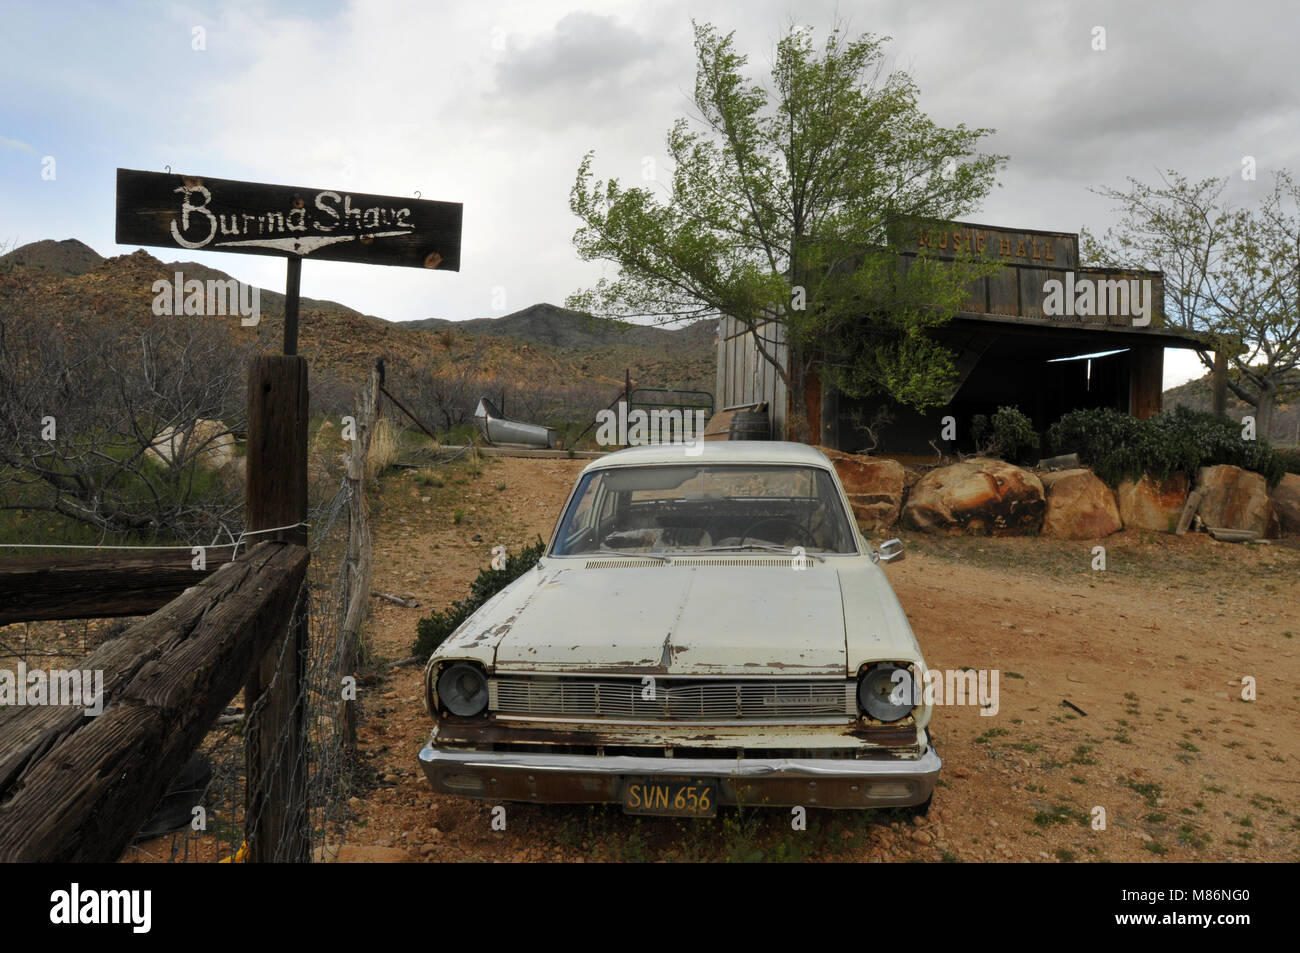 Une vieille voiture et Burma-Shave enseigne publicitaire stand près d'un bâtiment en bois patiné derrière le micocoulier, magasin général, un monument de la route 66 en Arizona. Banque D'Images